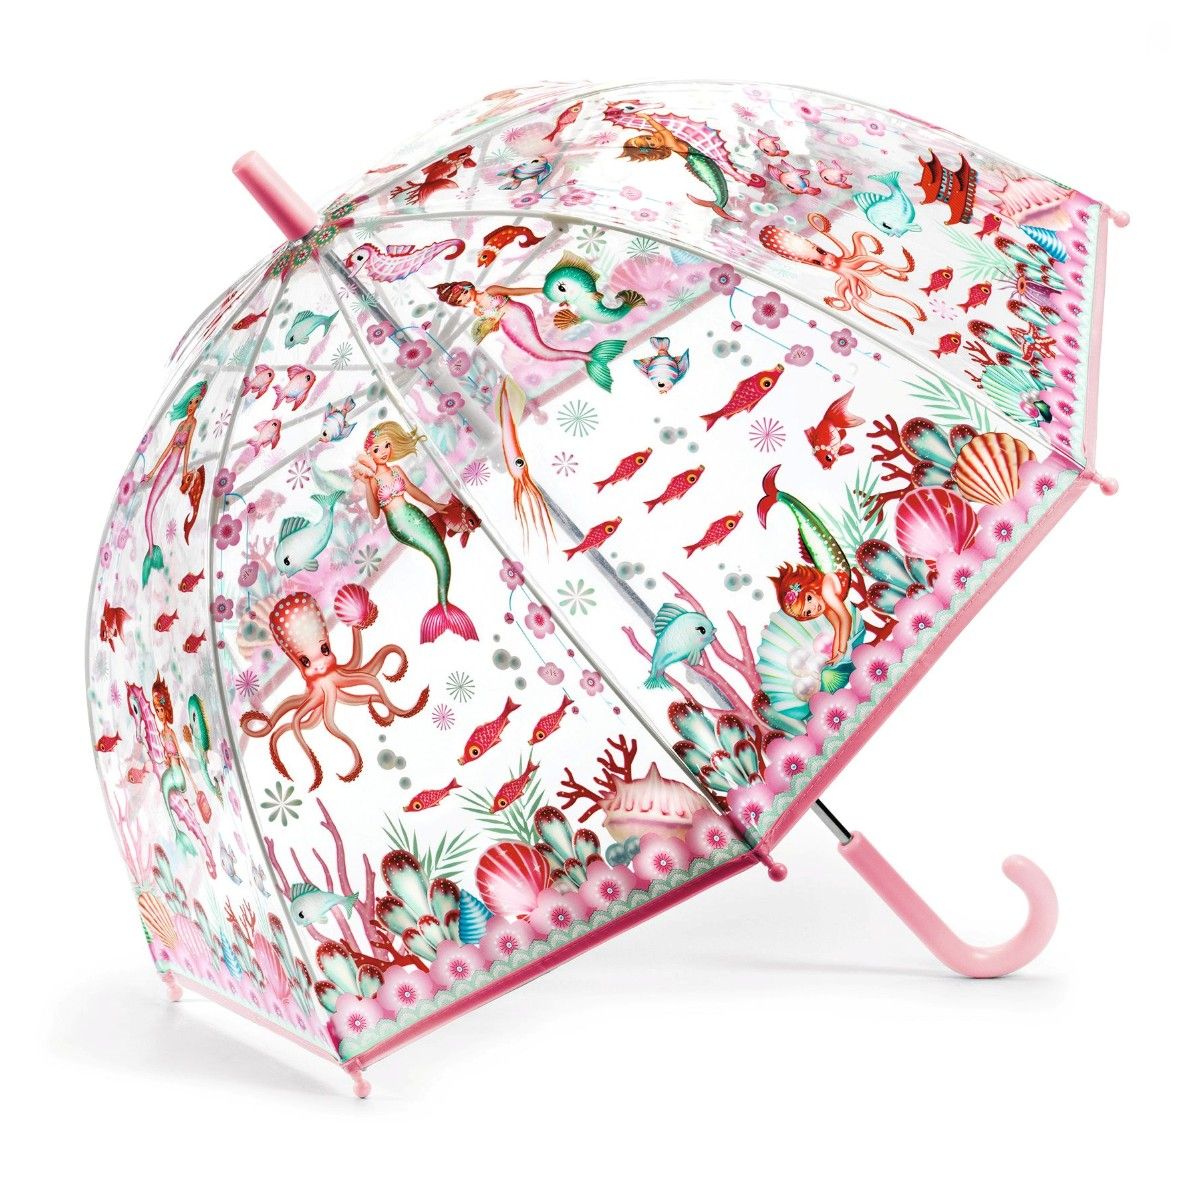 Paraply fra Djeco med havfruer og gennemsigtig baggrund, så man kan orientere sig i regnen